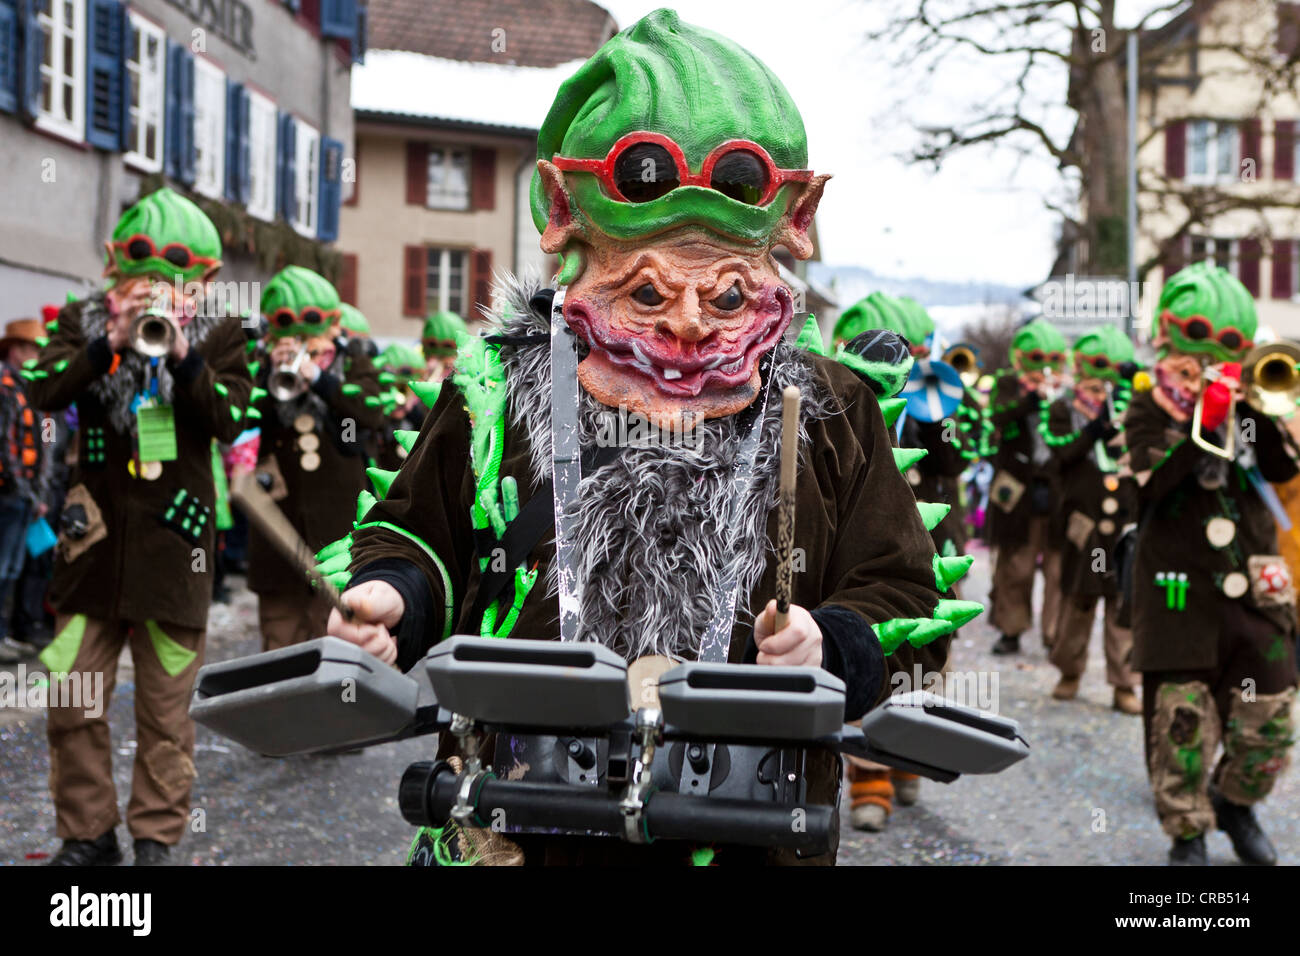 Vergiften Sie, Zwerge, Guggen-Musik, Kostüme, 35.  Motteri-Umzugsorganisation Parade in Malters, Luzern, Schweiz, Europa  Stockfotografie - Alamy